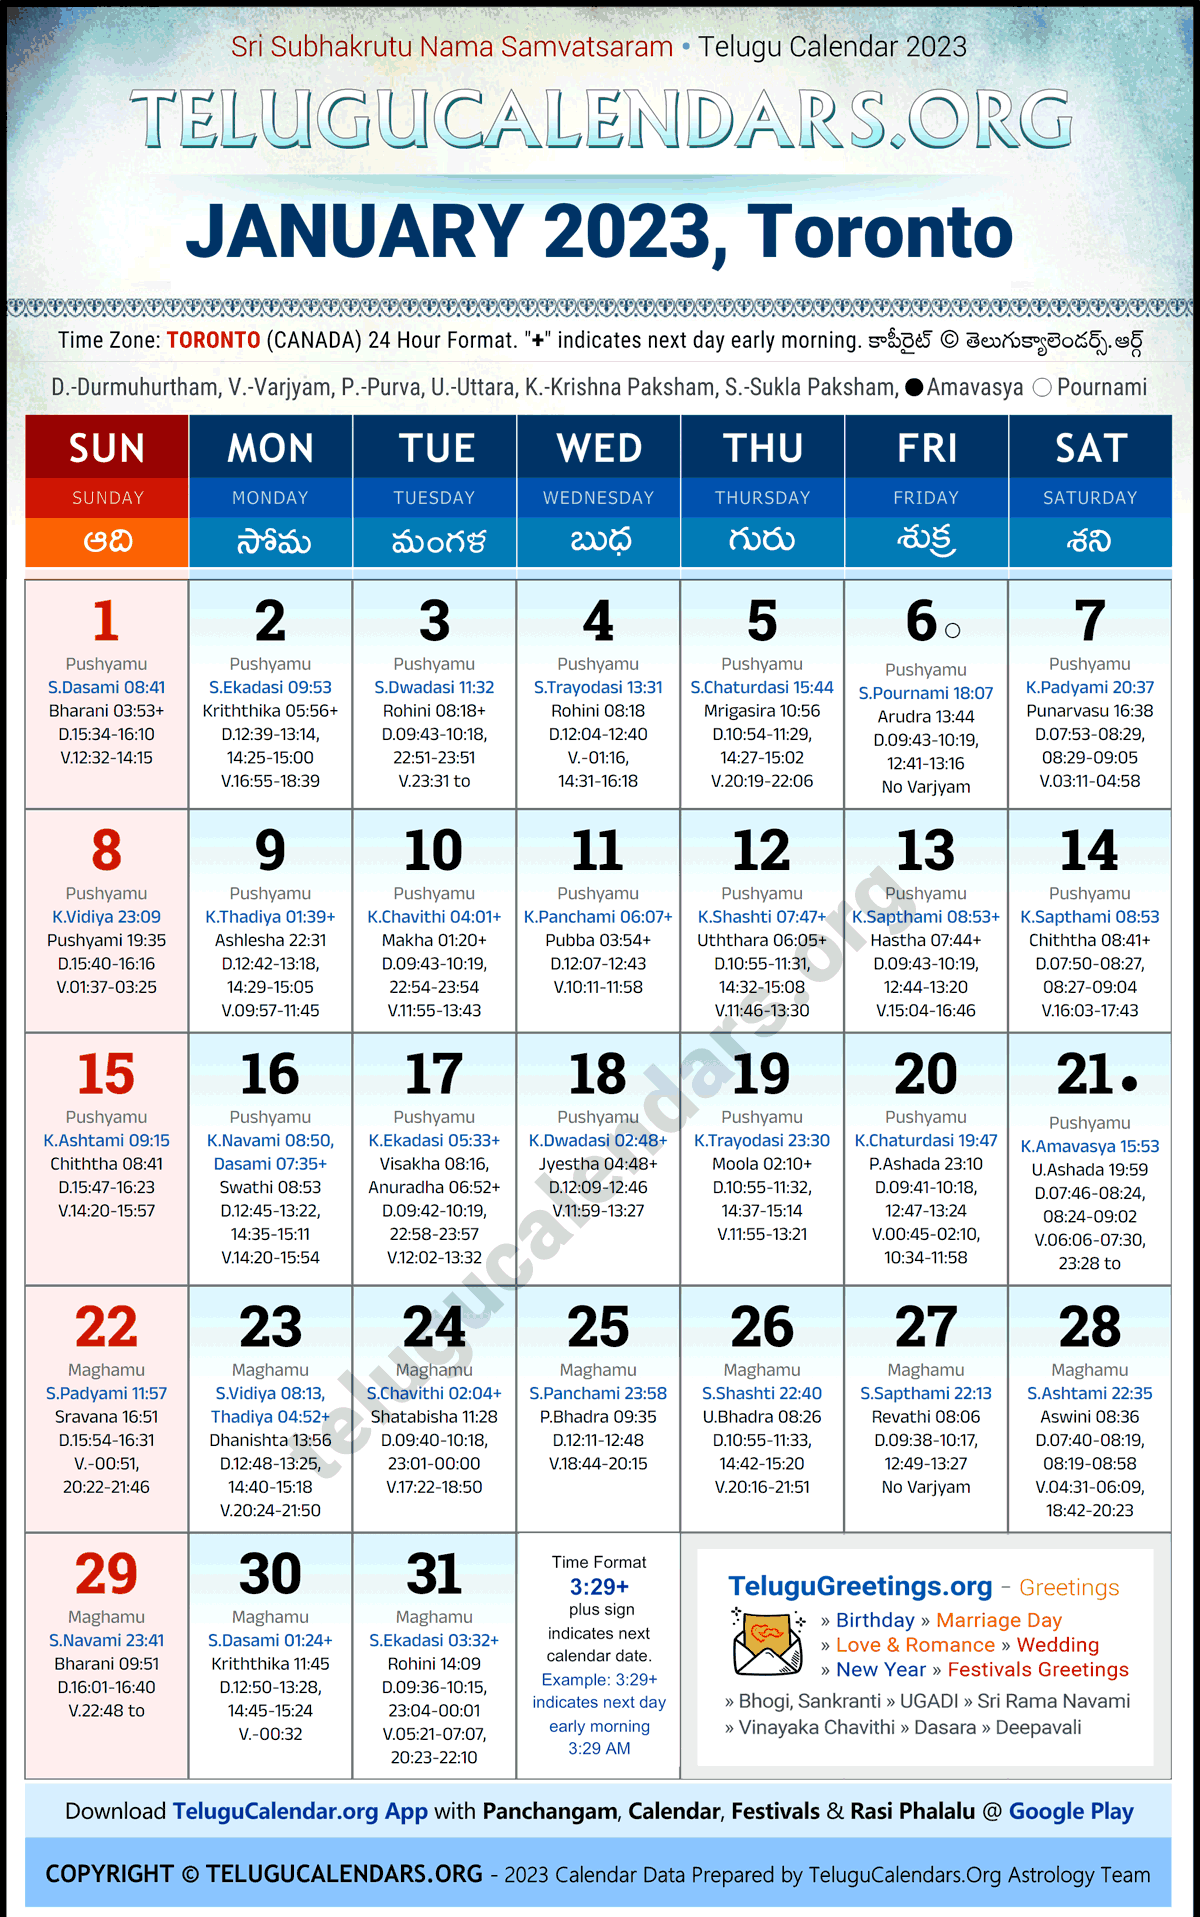 Telugu Calendar 2023 January Festivals for Toronto